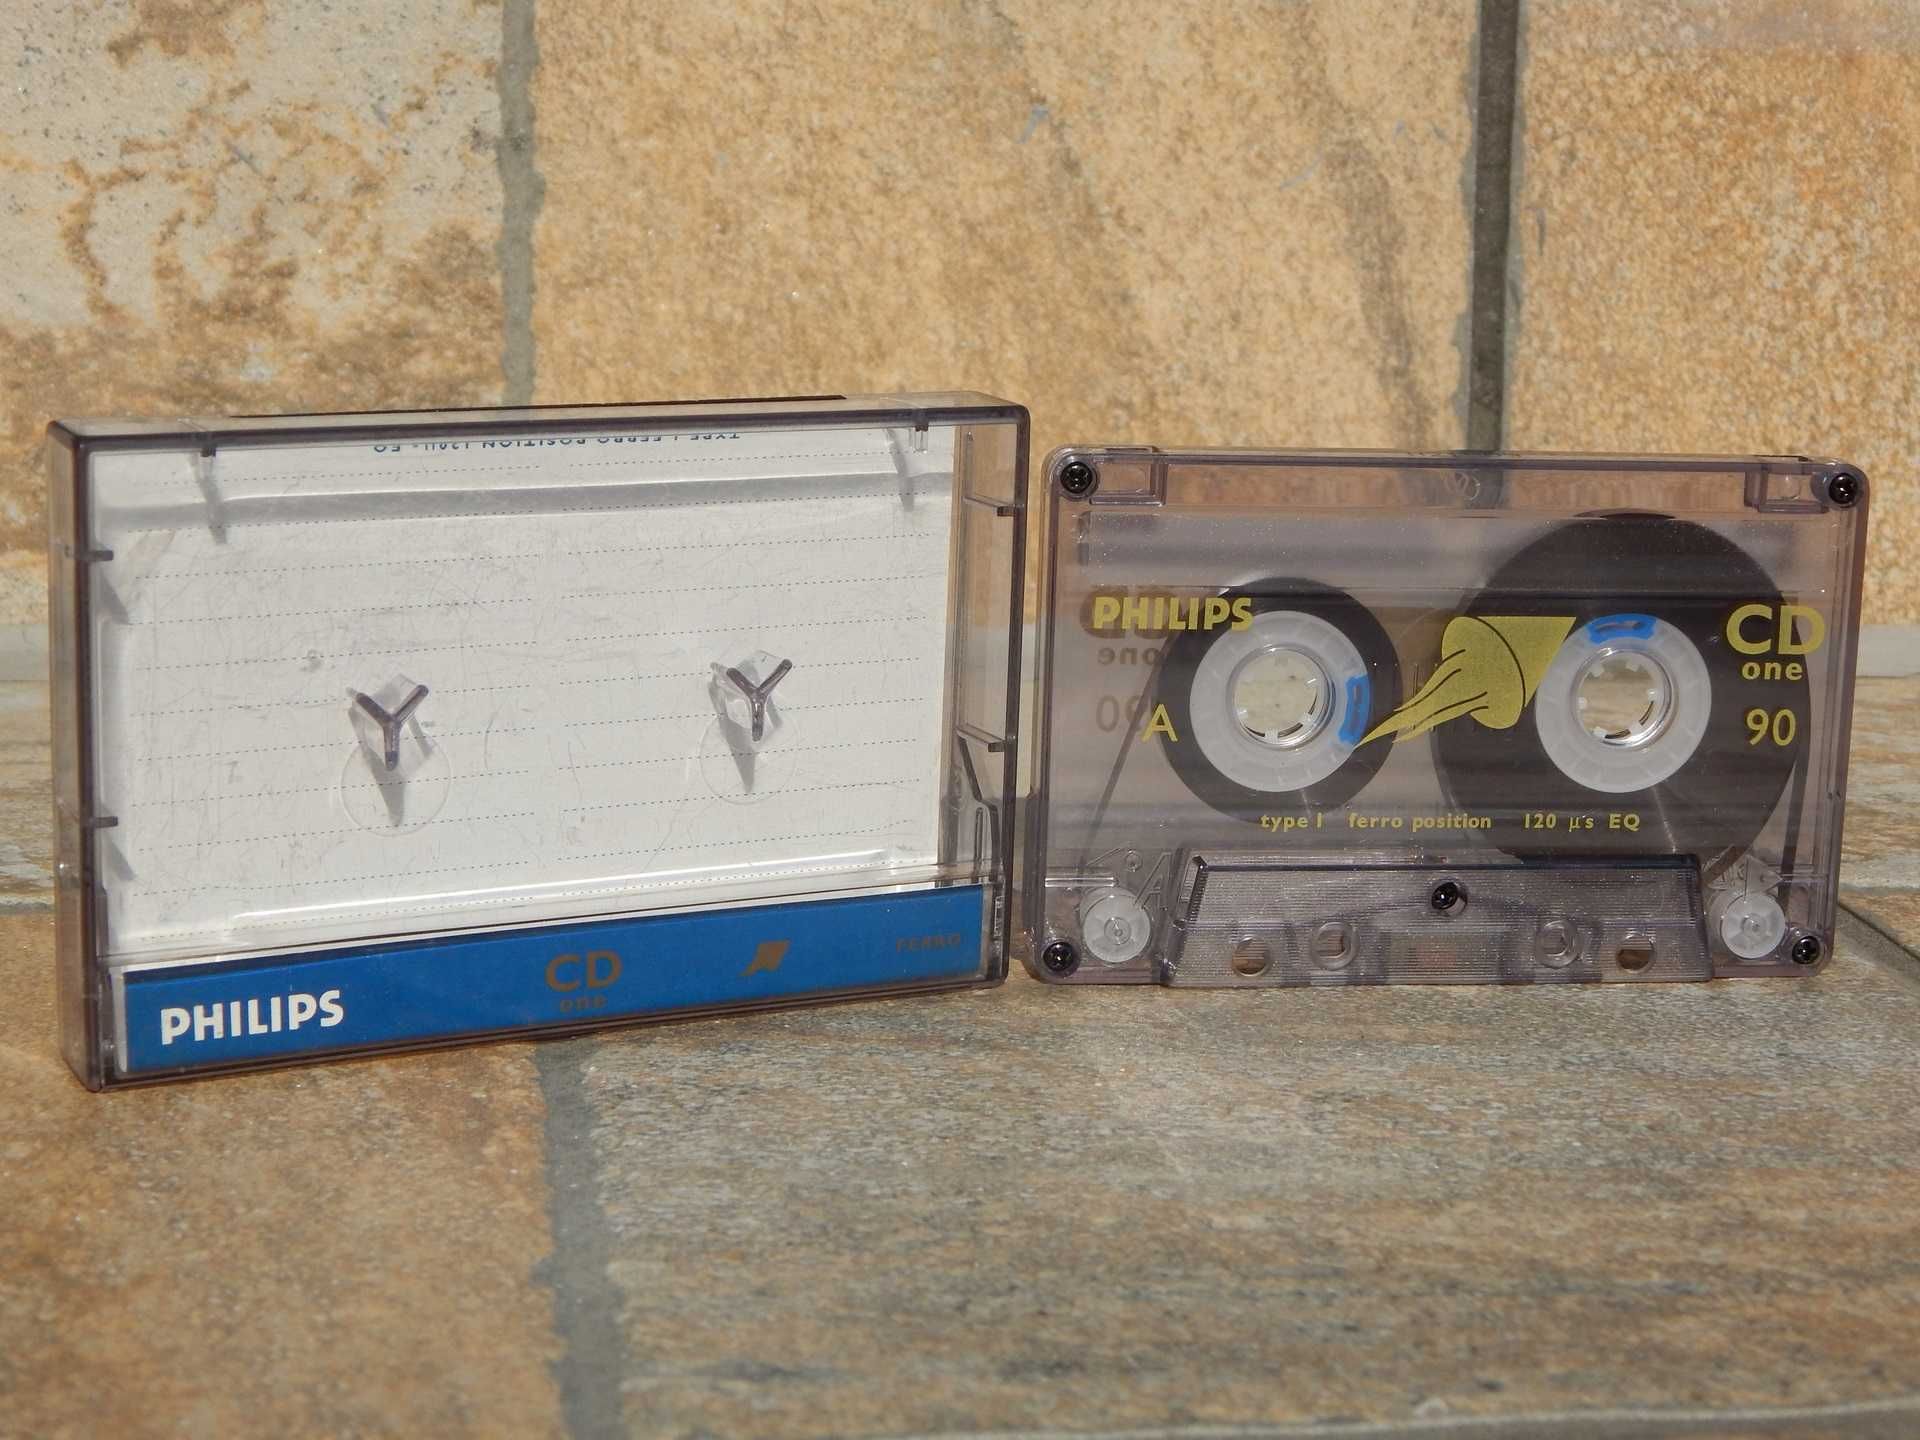 Caseta audio Philips Ferro Type I 90 inregistrata cu cutie originala